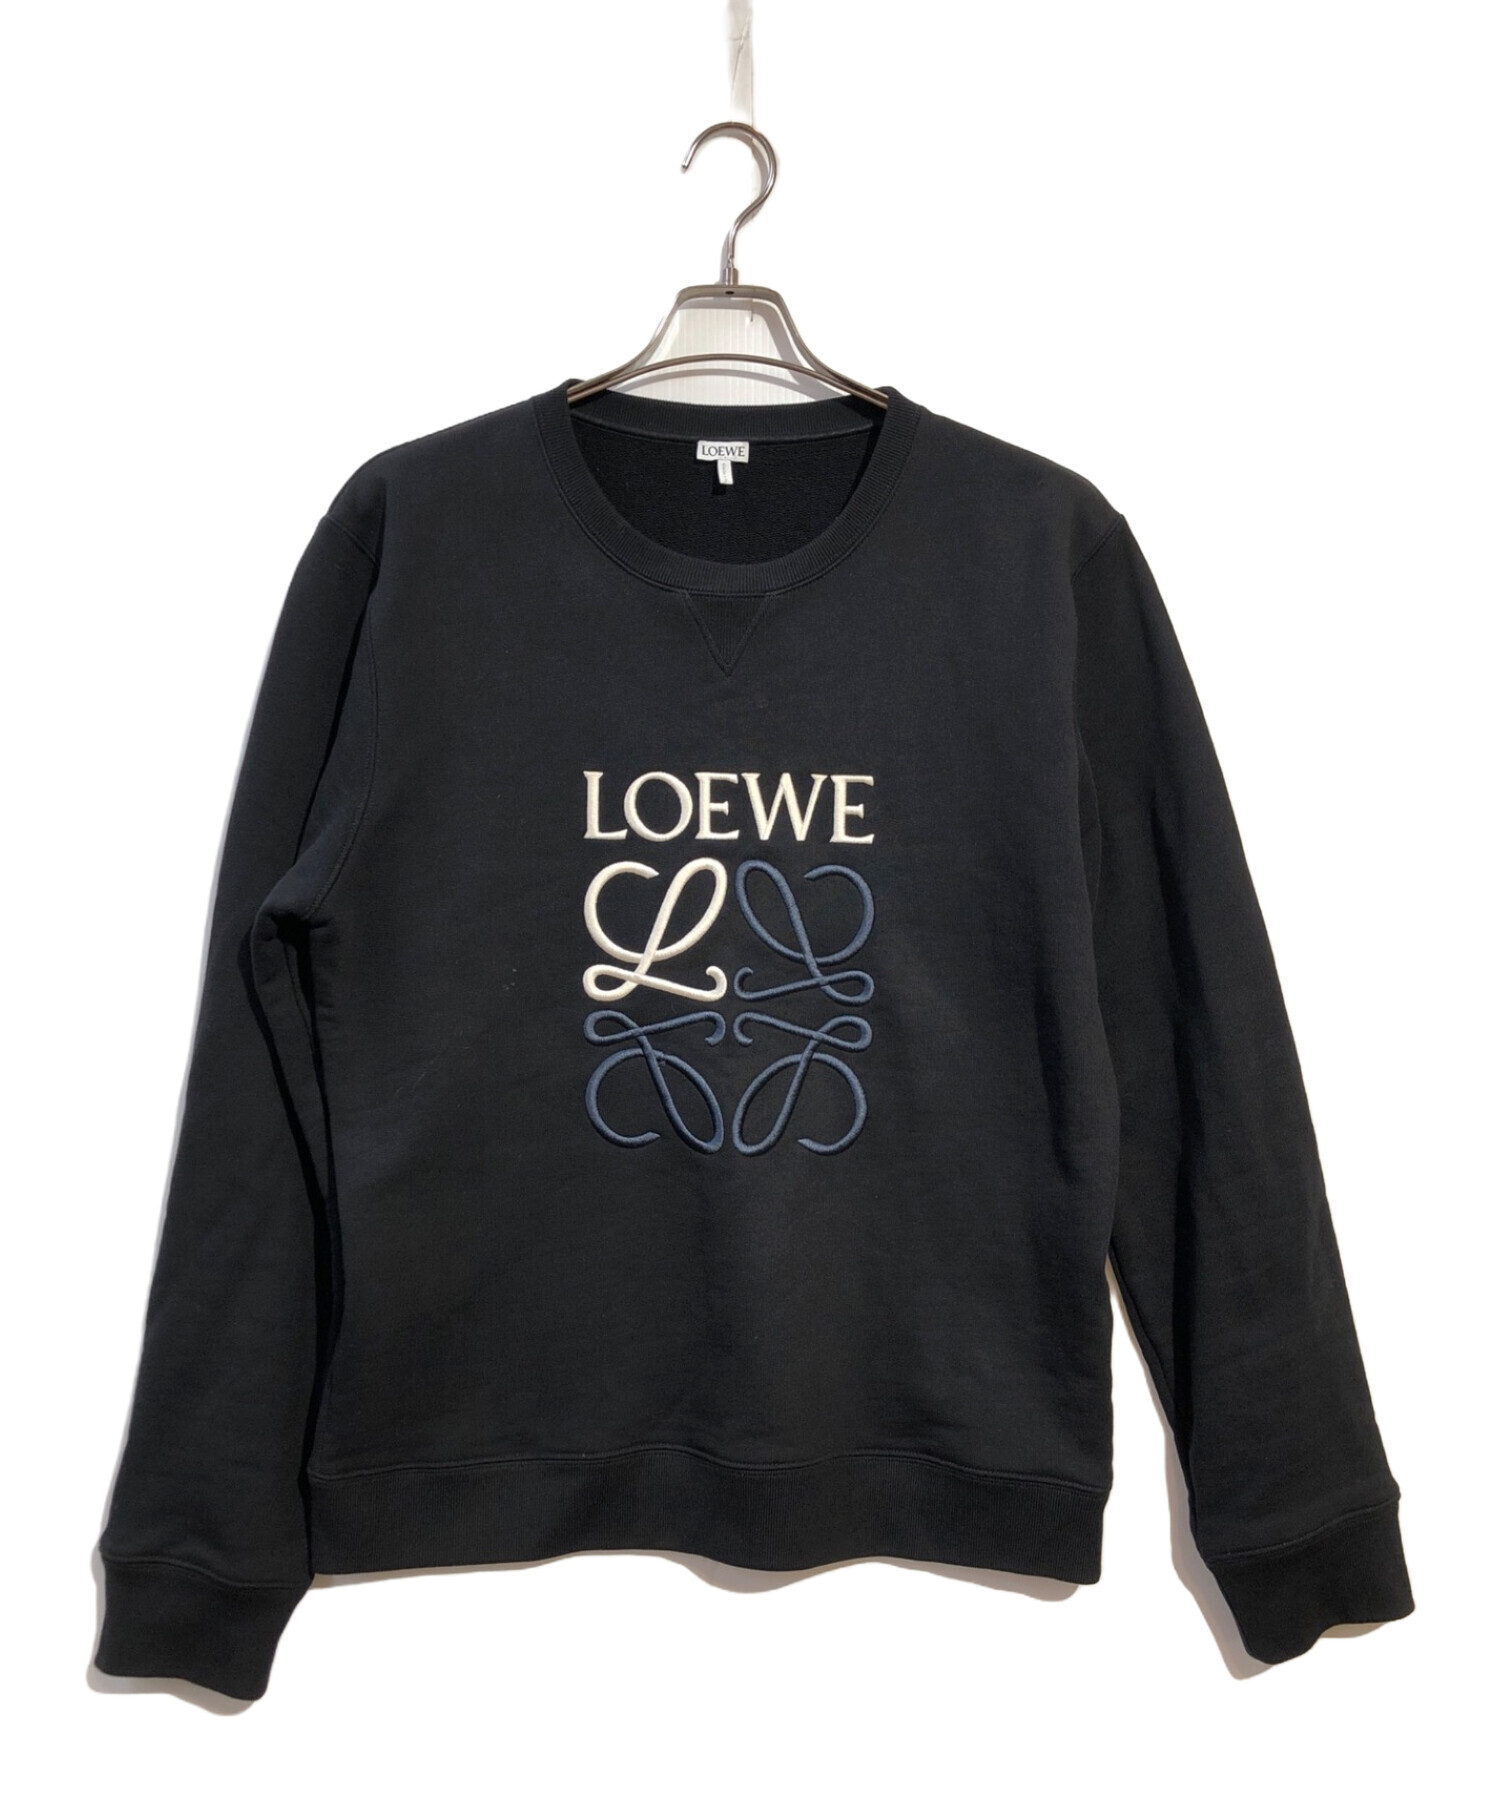 LOEWE (ロエベ) ロエベ アナグラム レギュラーフィット スウェットシャツ ブラック サイズ:XL